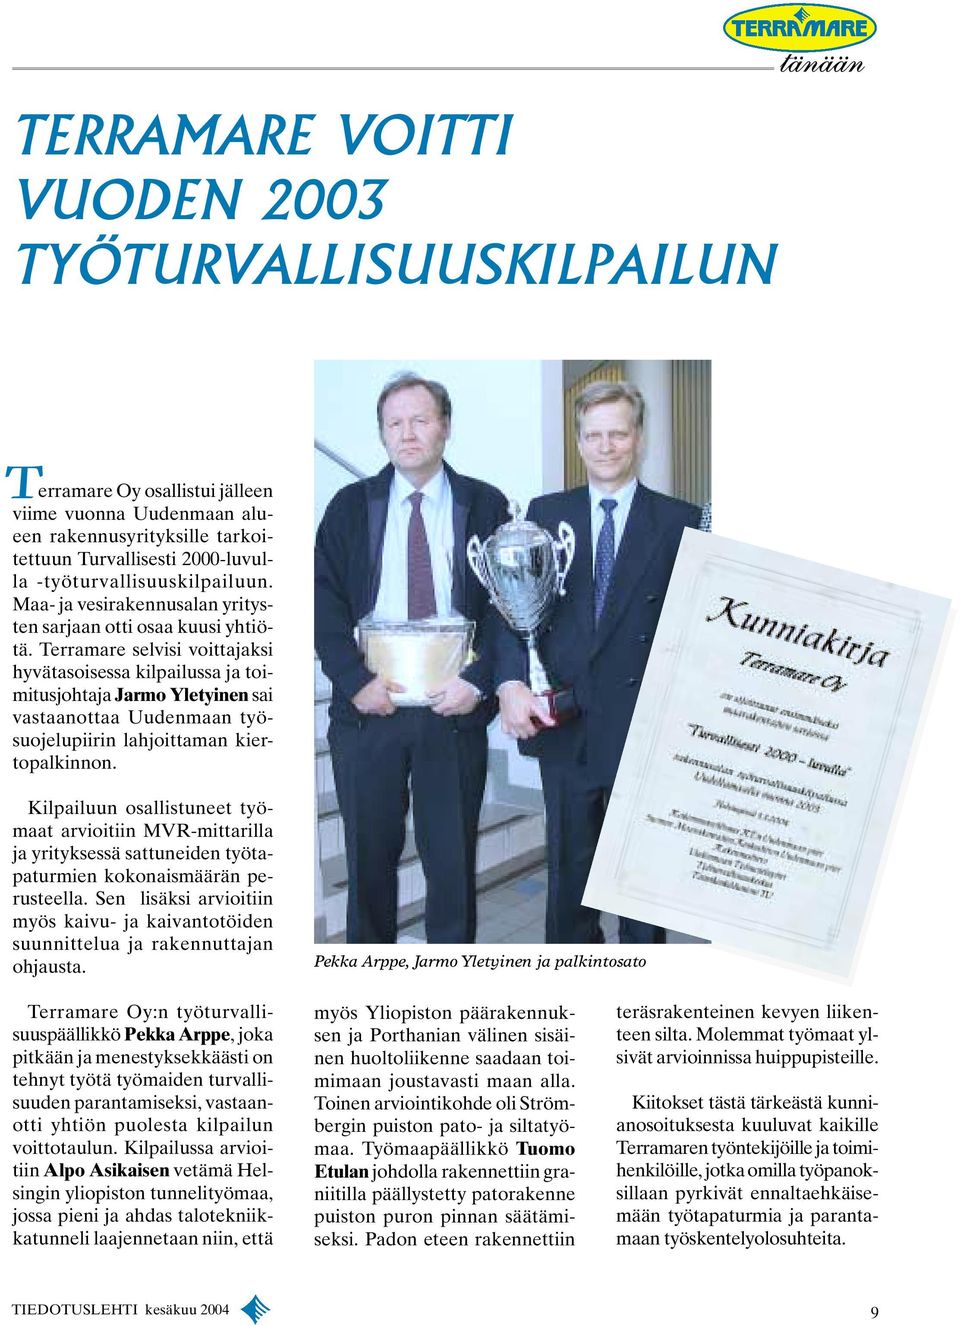 Terramare selvisi voittajaksi hyvätasoisessa kilpailussa ja toimitusjohtaja Jarmo Yletyinen sai vastaanottaa Uudenmaan työsuojelupiirin lahjoittaman kiertopalkinnon.